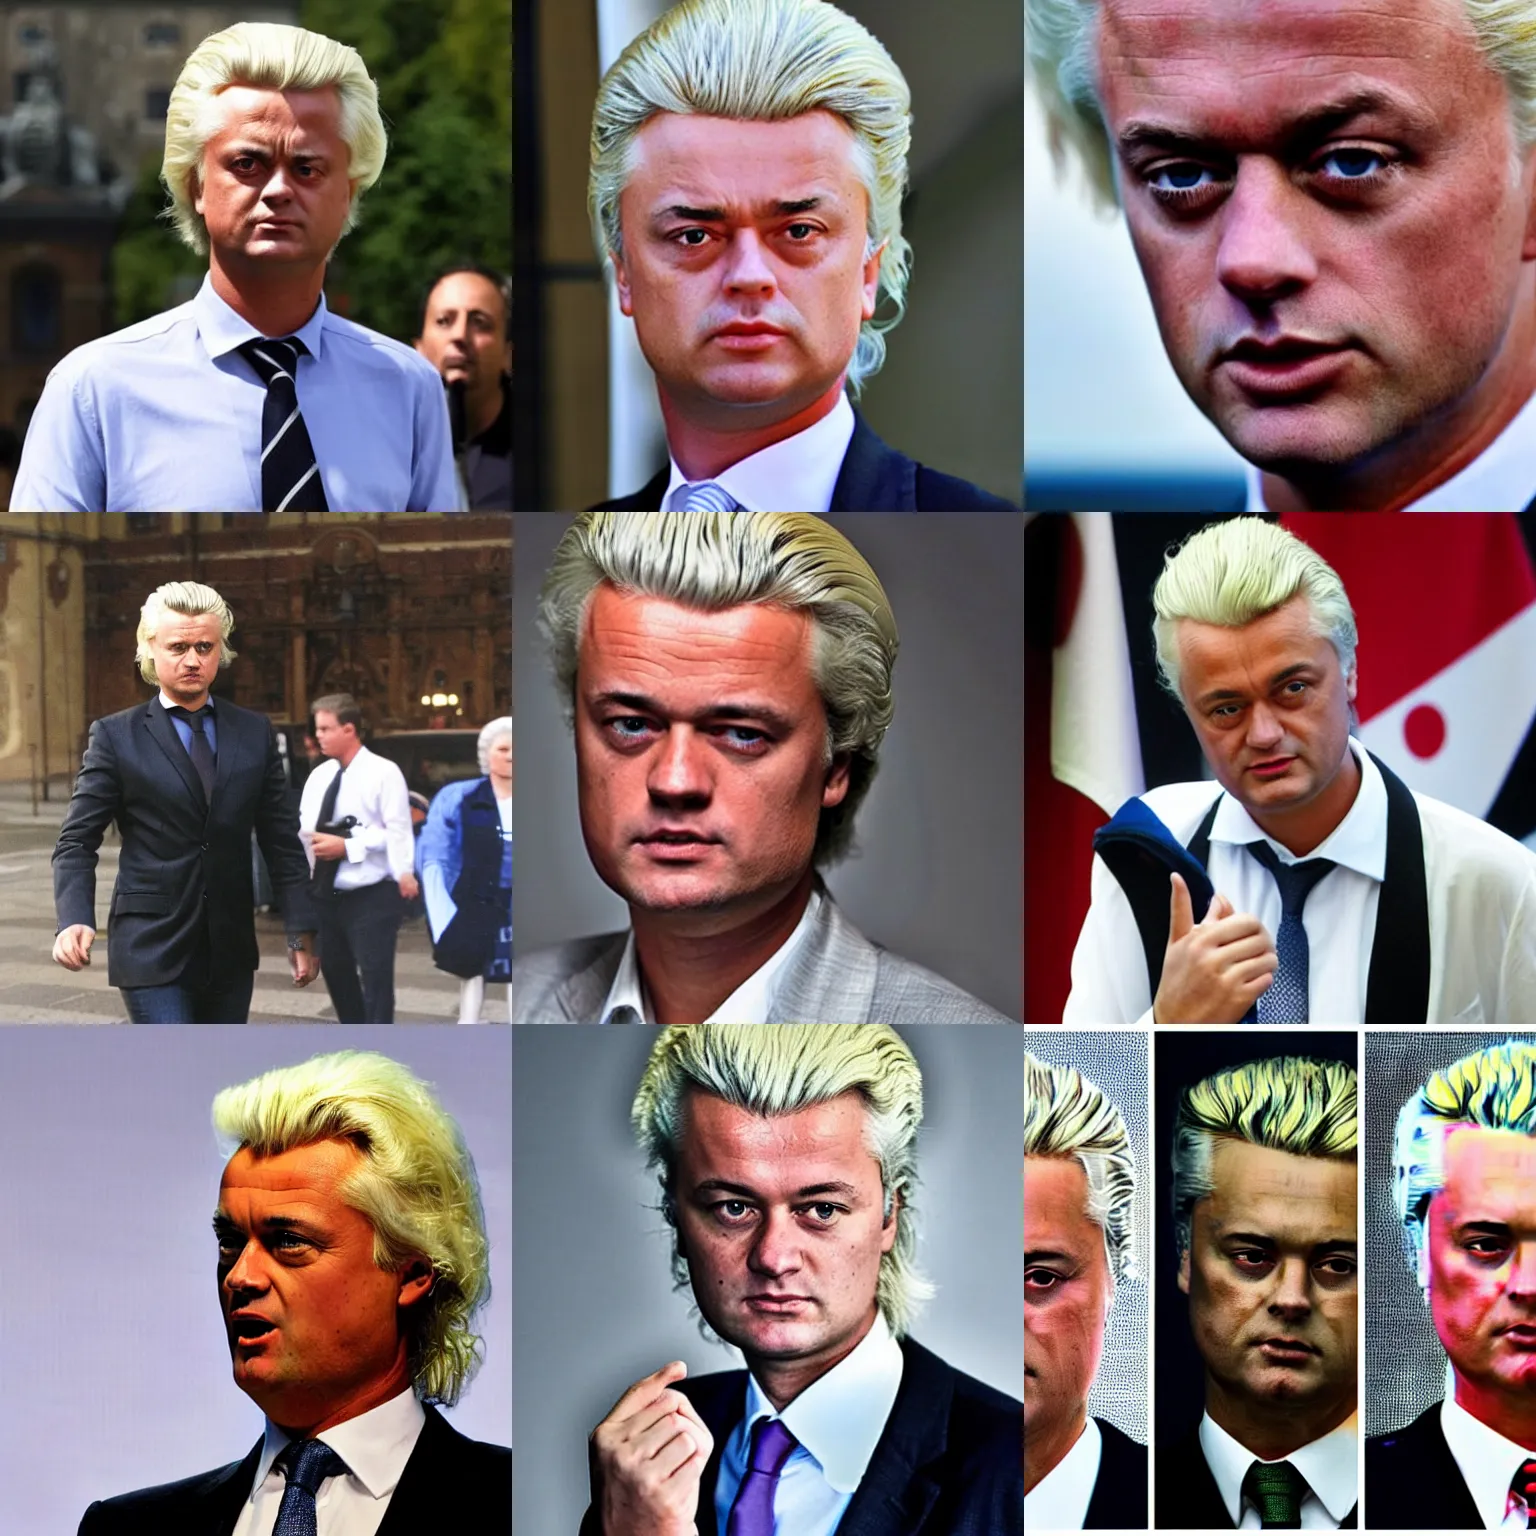 Prompt: Geert Wilders